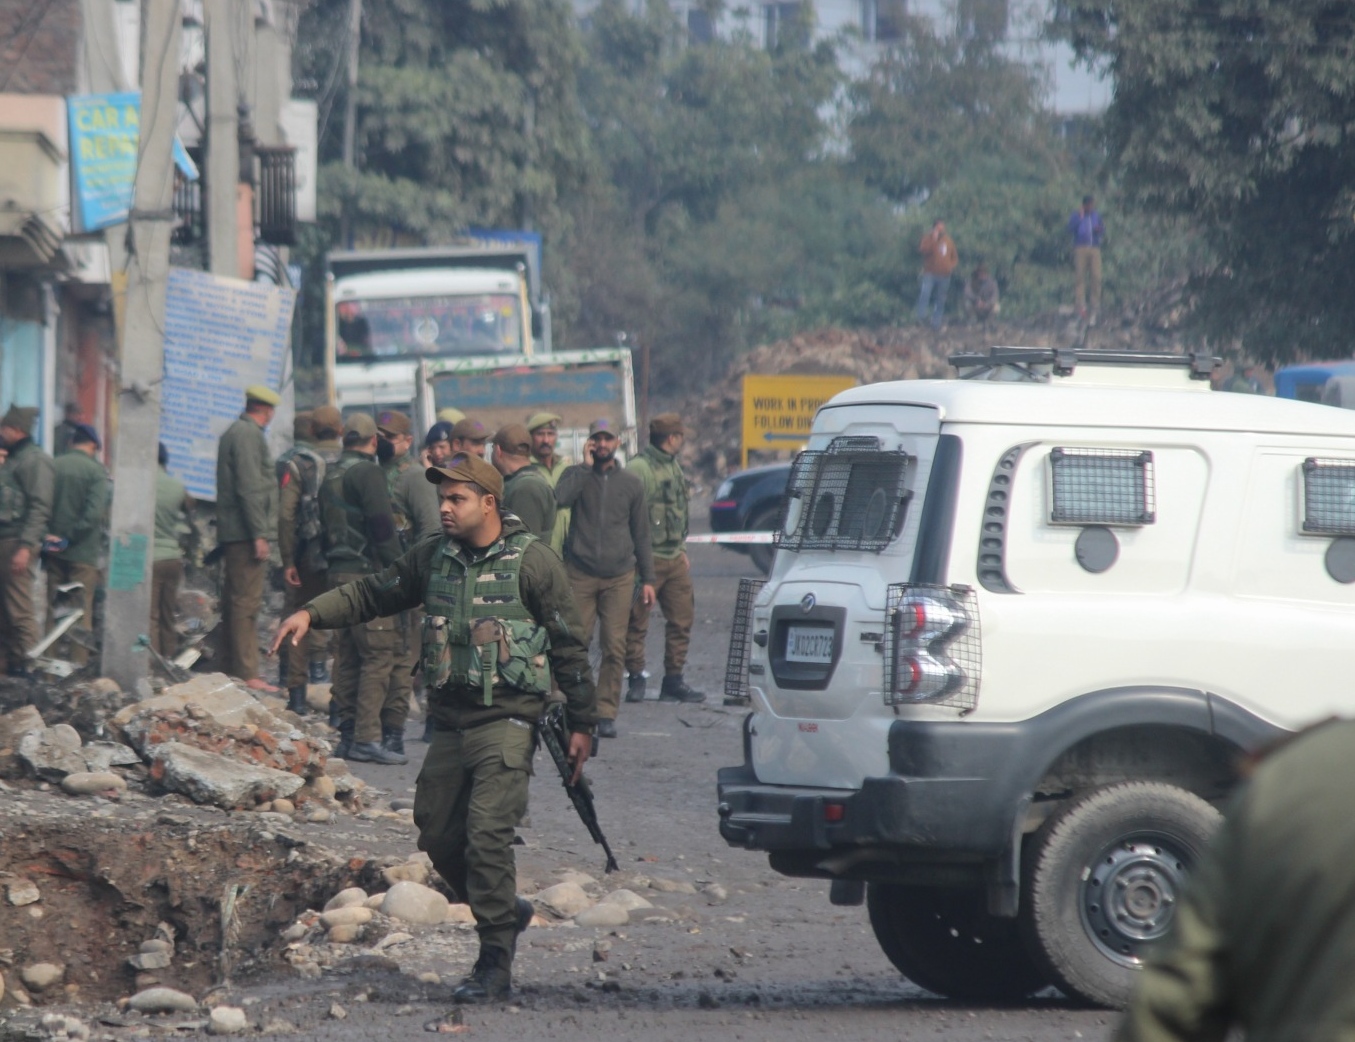 Civilian injured in Srinagar grenade explosion